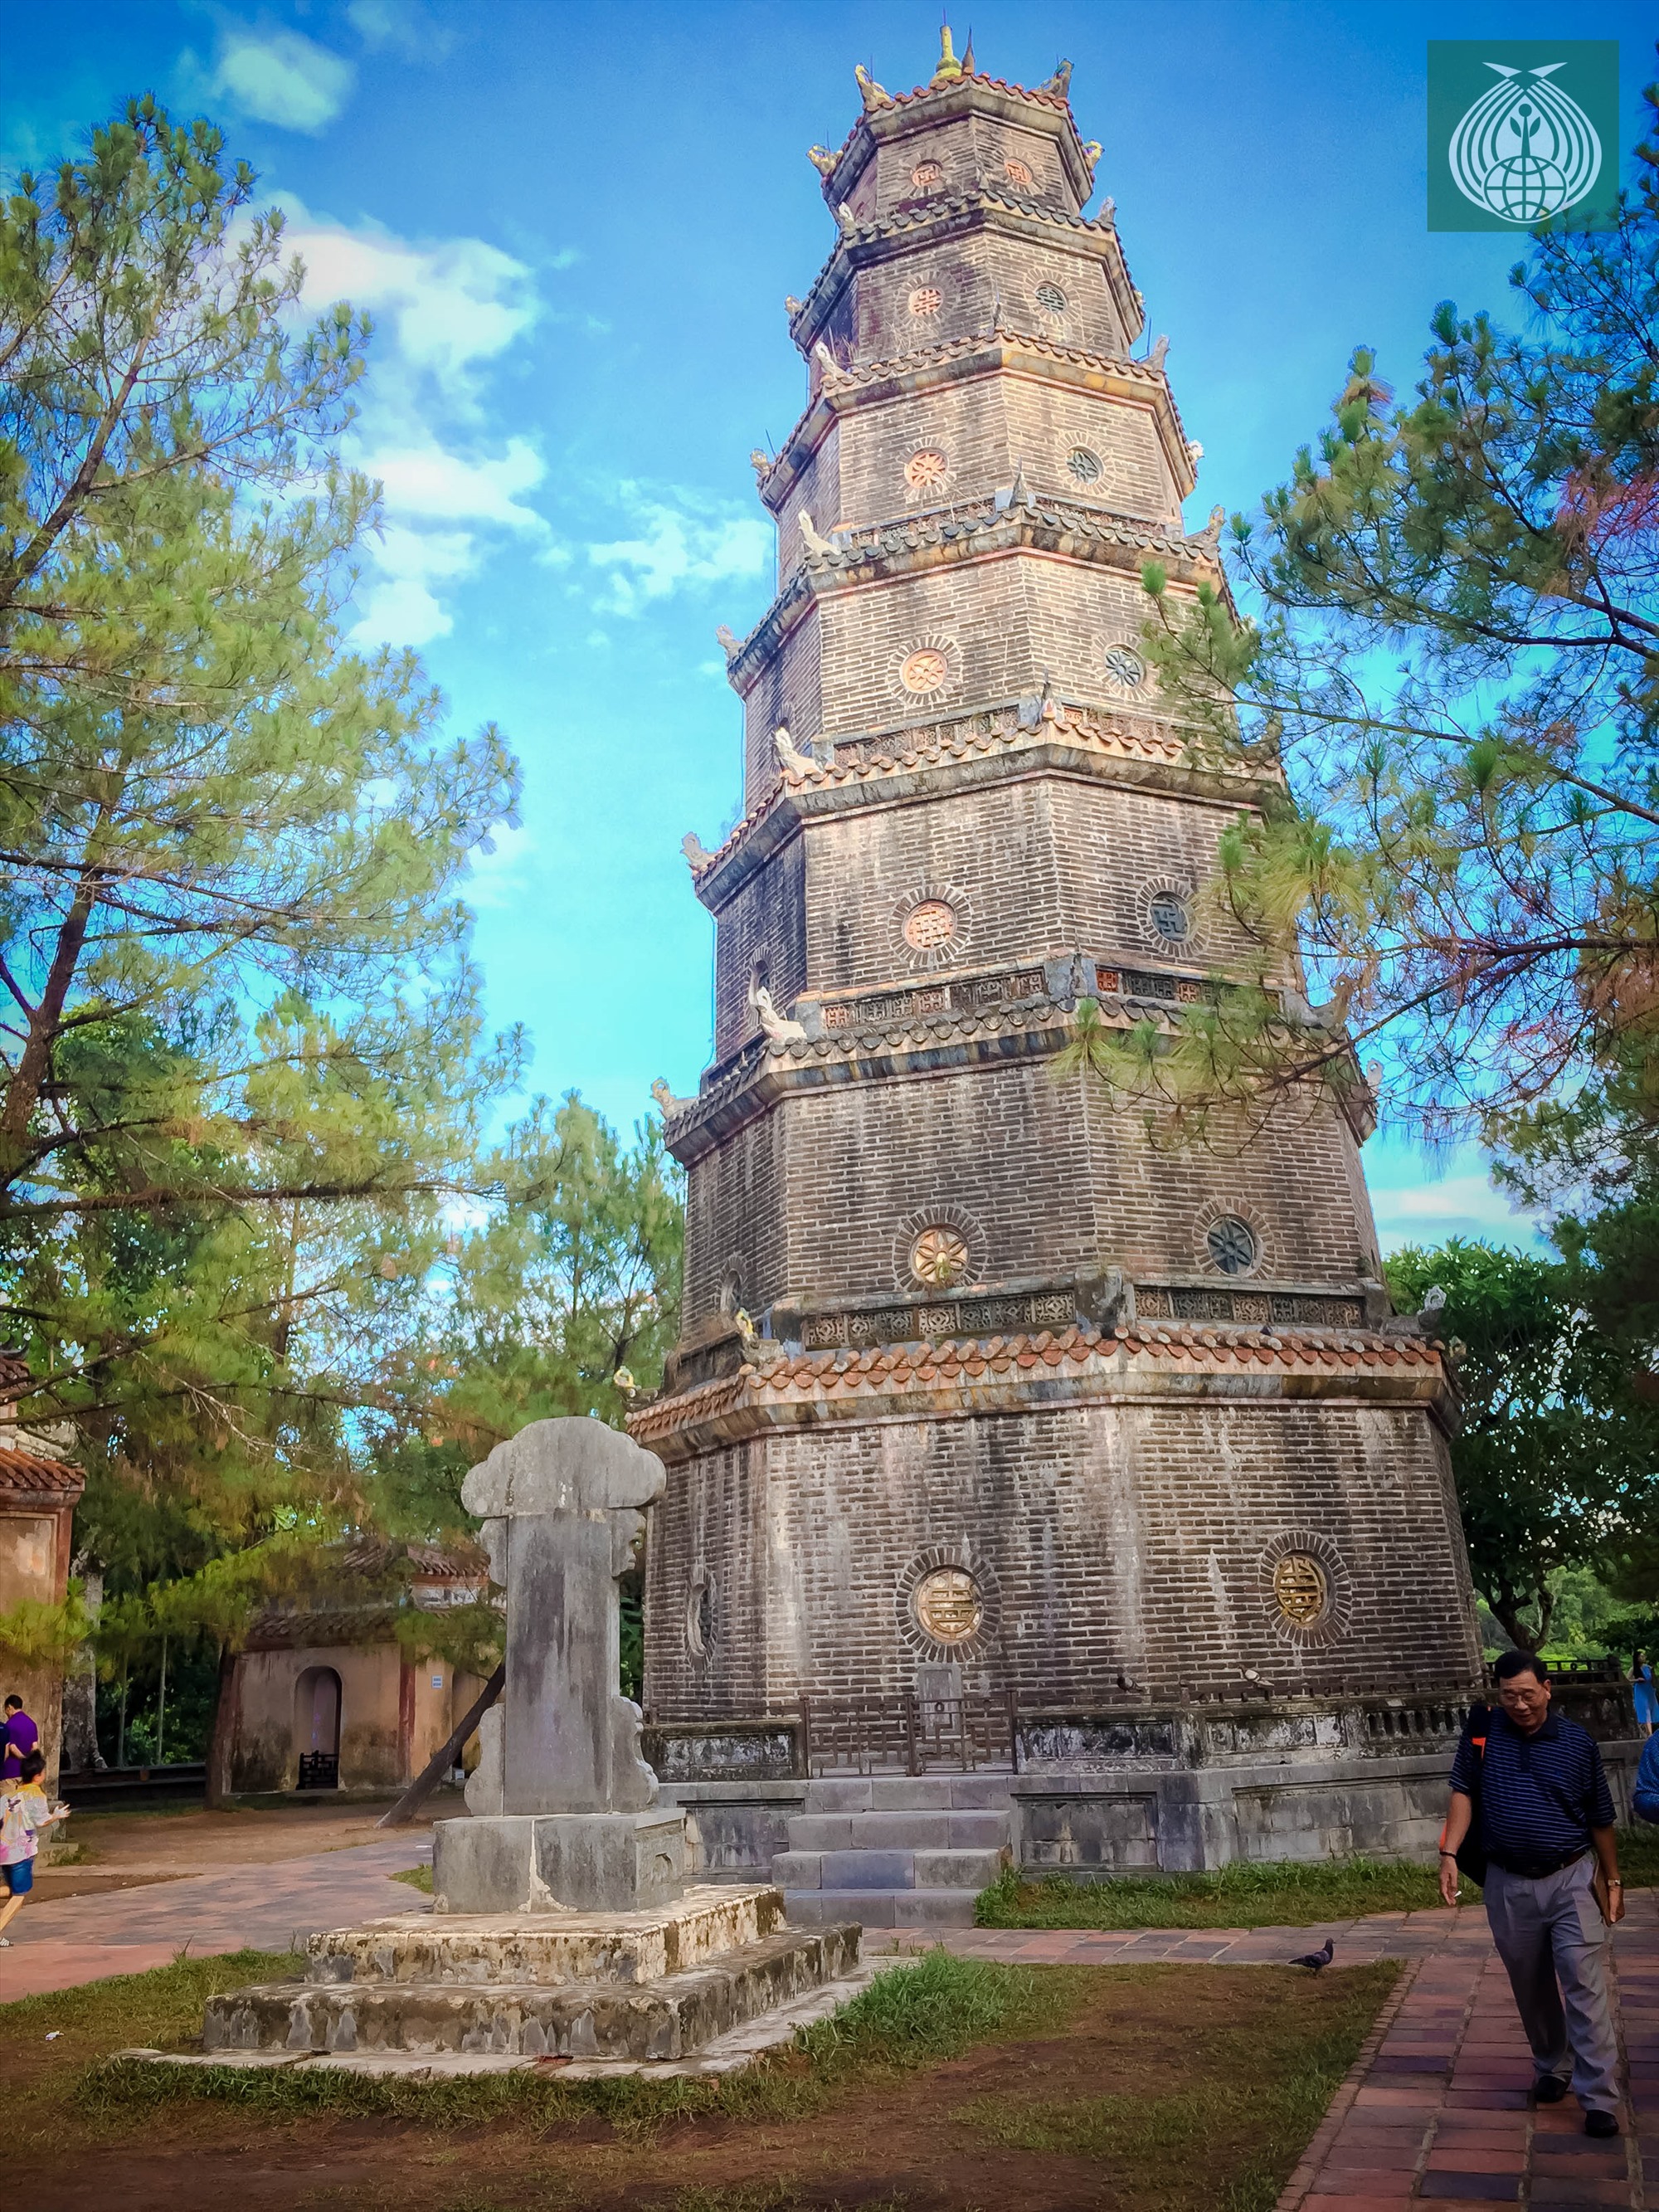 Tháp Phước Duyên cao đến 21m với hình dạng bát giác và có bảy tầng, mỗi tầng tháp đều có thờ tượng Phật.